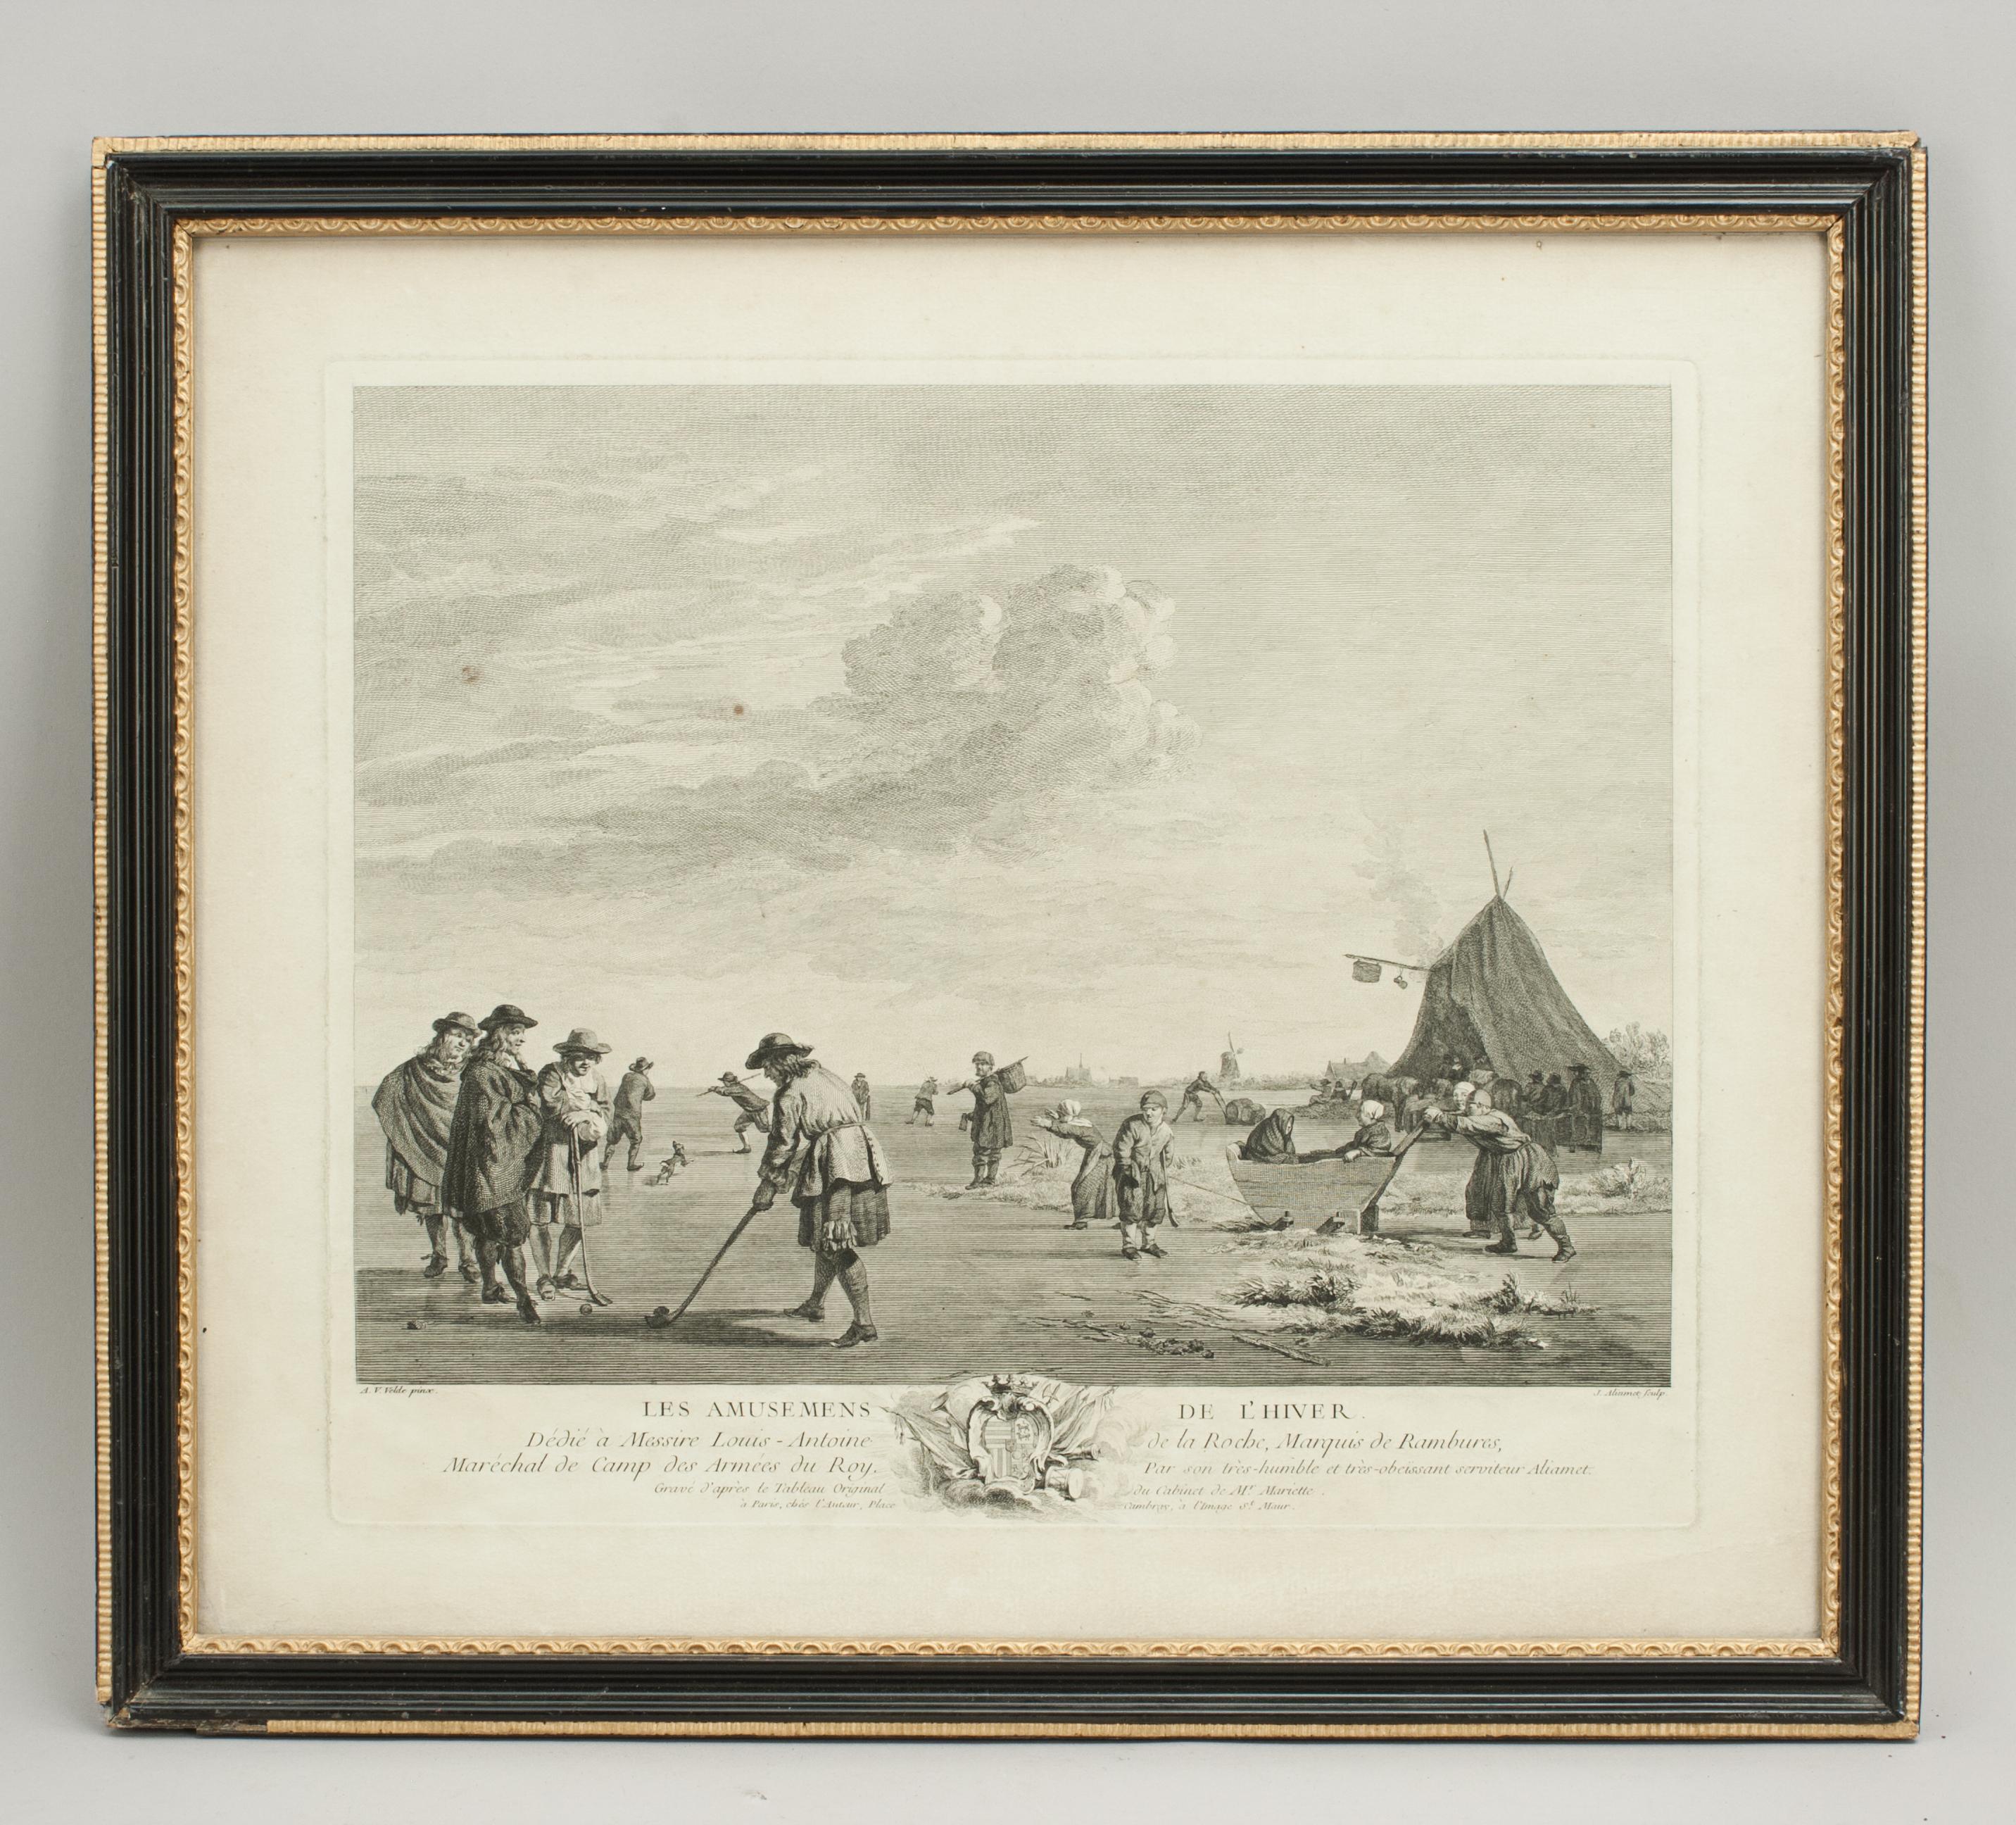 Gravure de golf néerlandaise par J. Aliamet, Les Amusements De L'Hiver.
Rare gravure de golf hollandaise du 18e siècle par J. Aliamet représentant un Hollandais jouant la première forme de golf sur la glace près de Haarlem en 1668. La gravure est